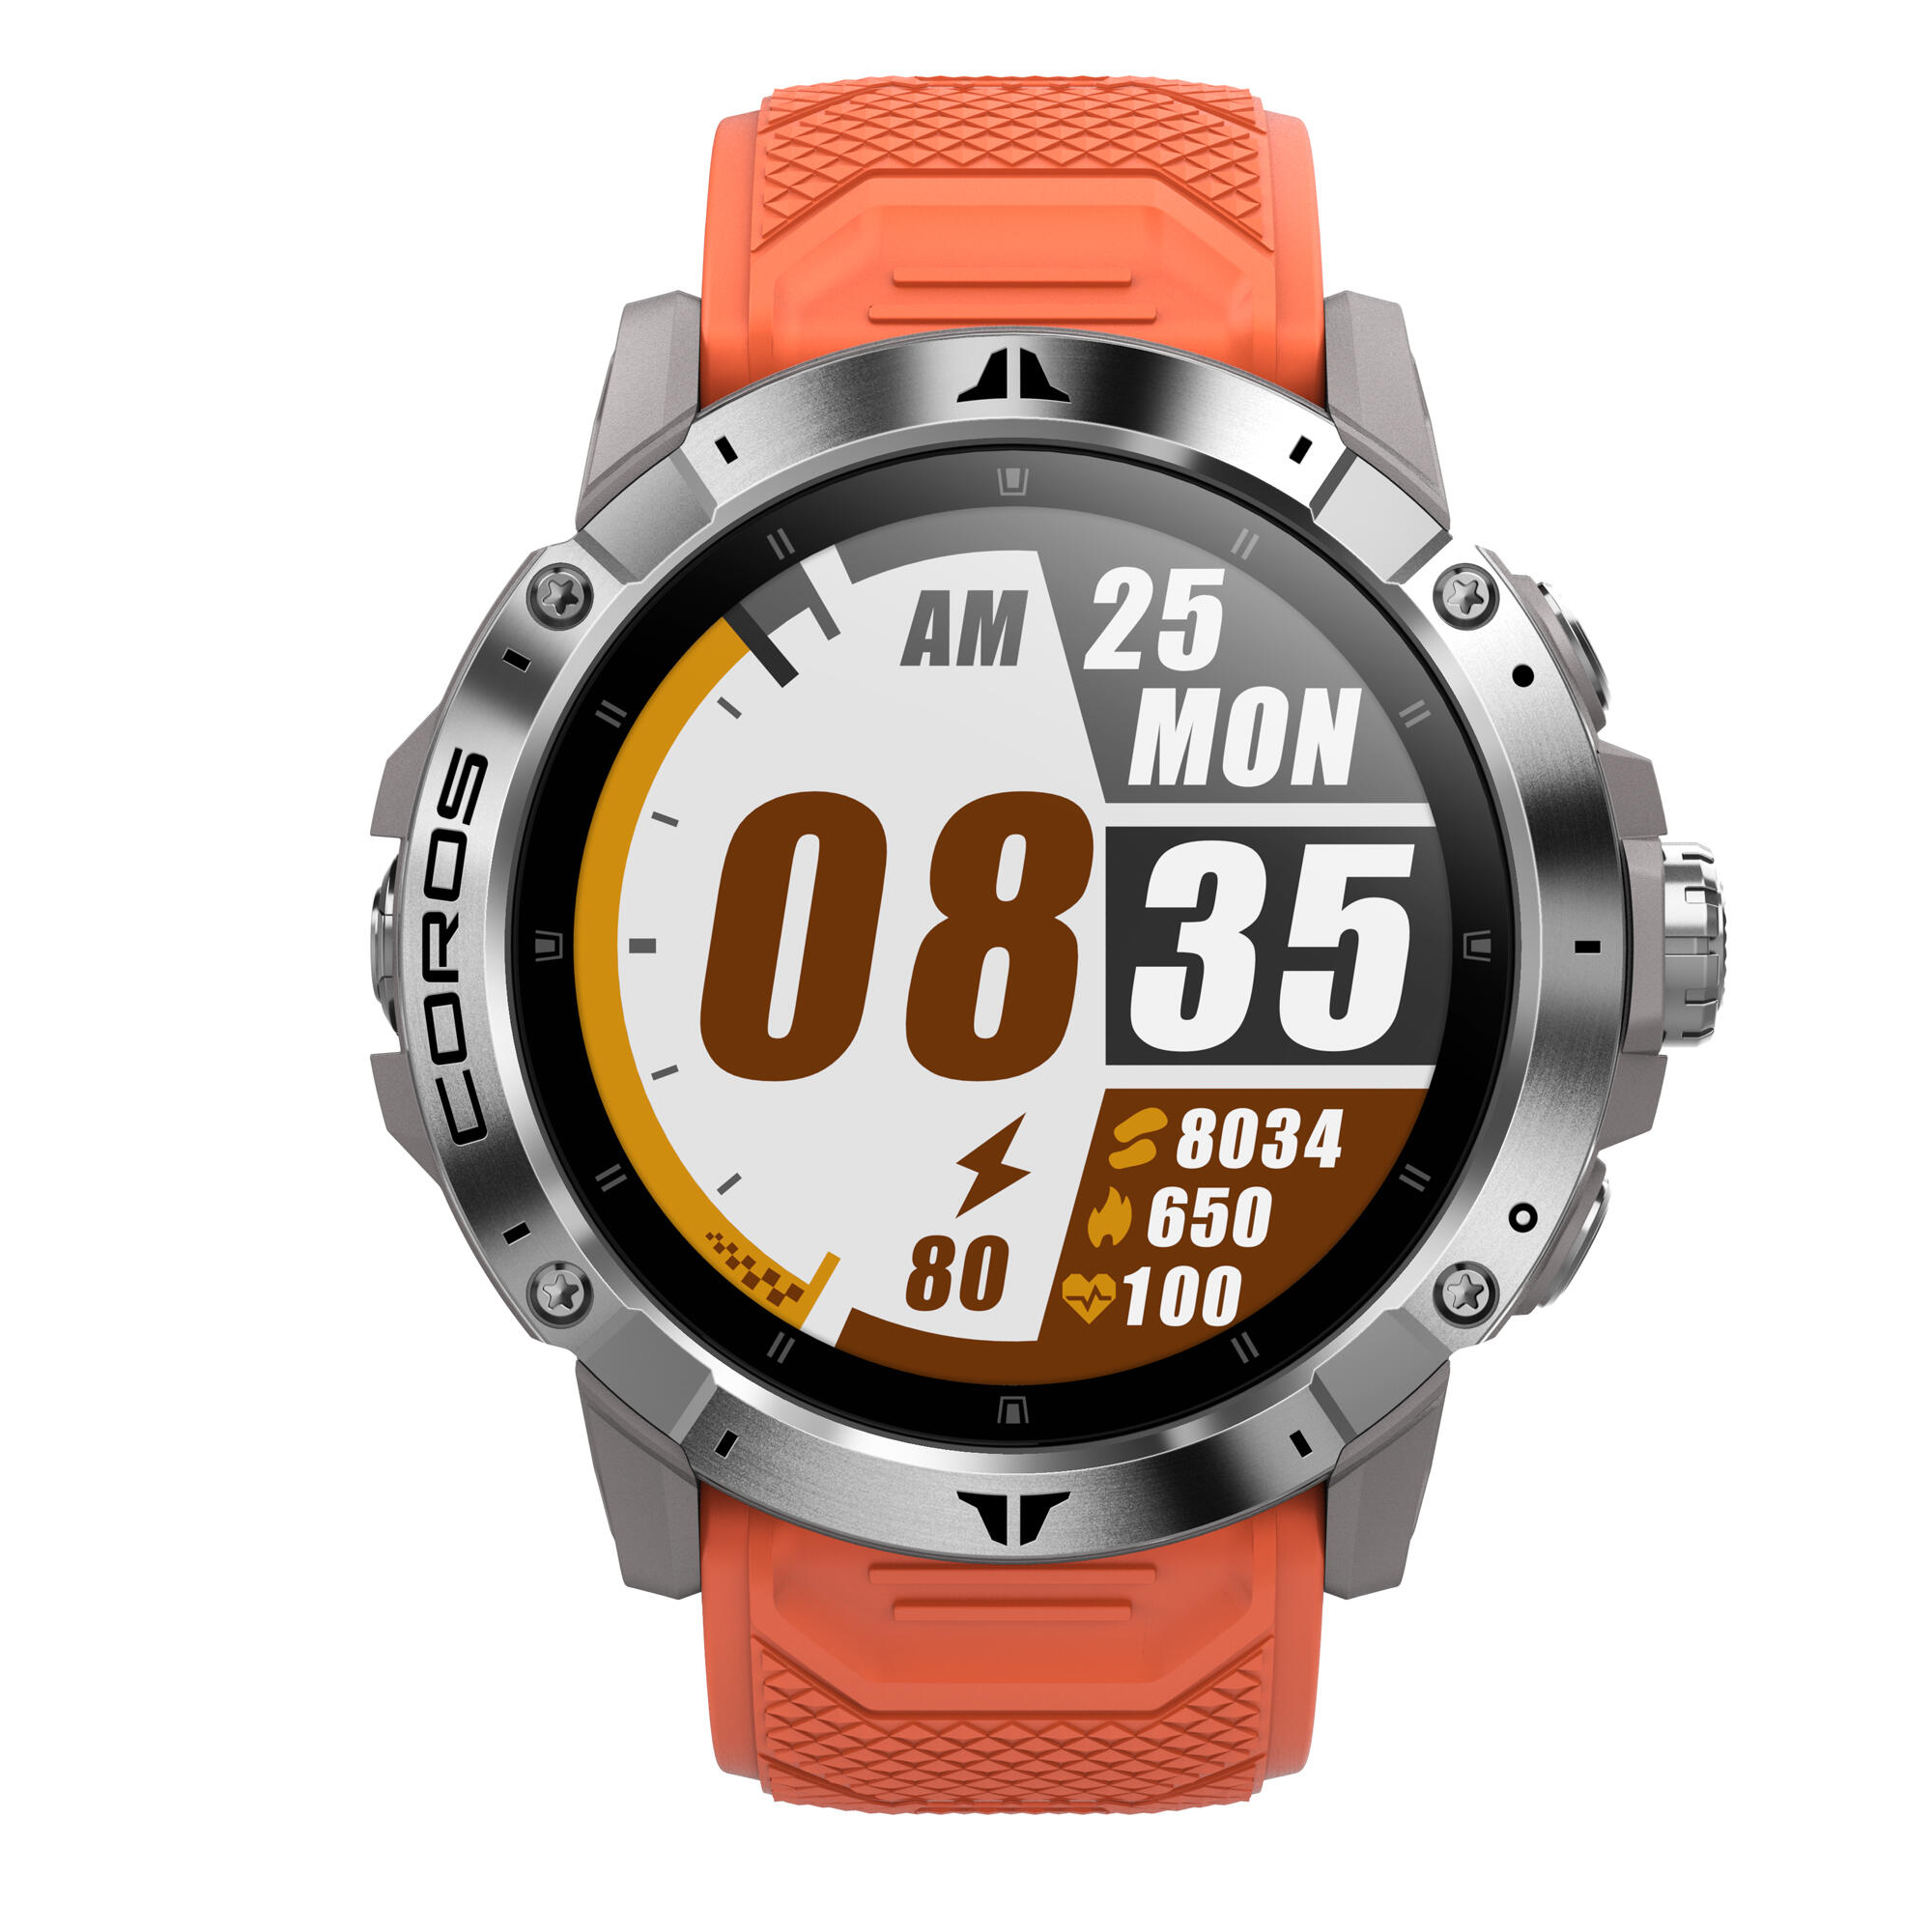 Ceas Smartwatch GPS cardio COROS VERTIX 2 Portocaliu alergare  Accesorii mers si alergare